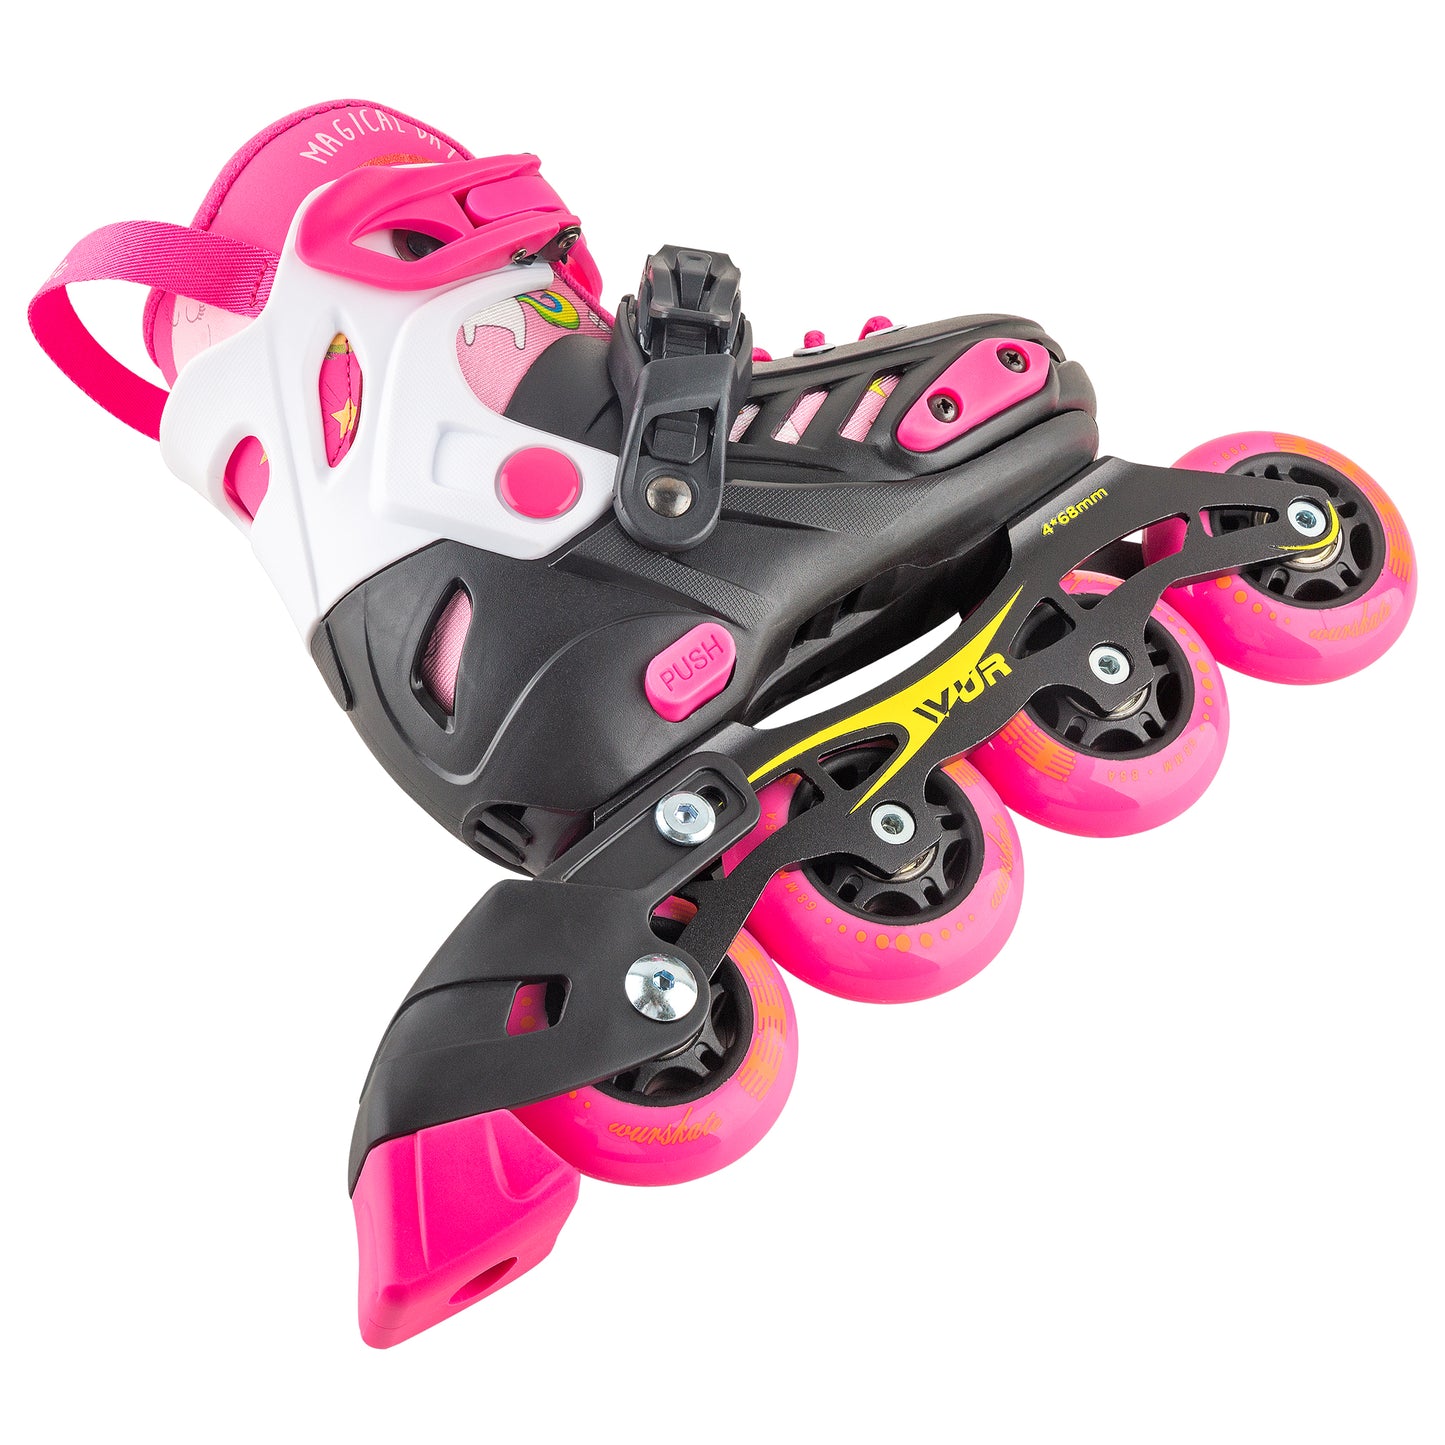 D101 Adjustable skate pink